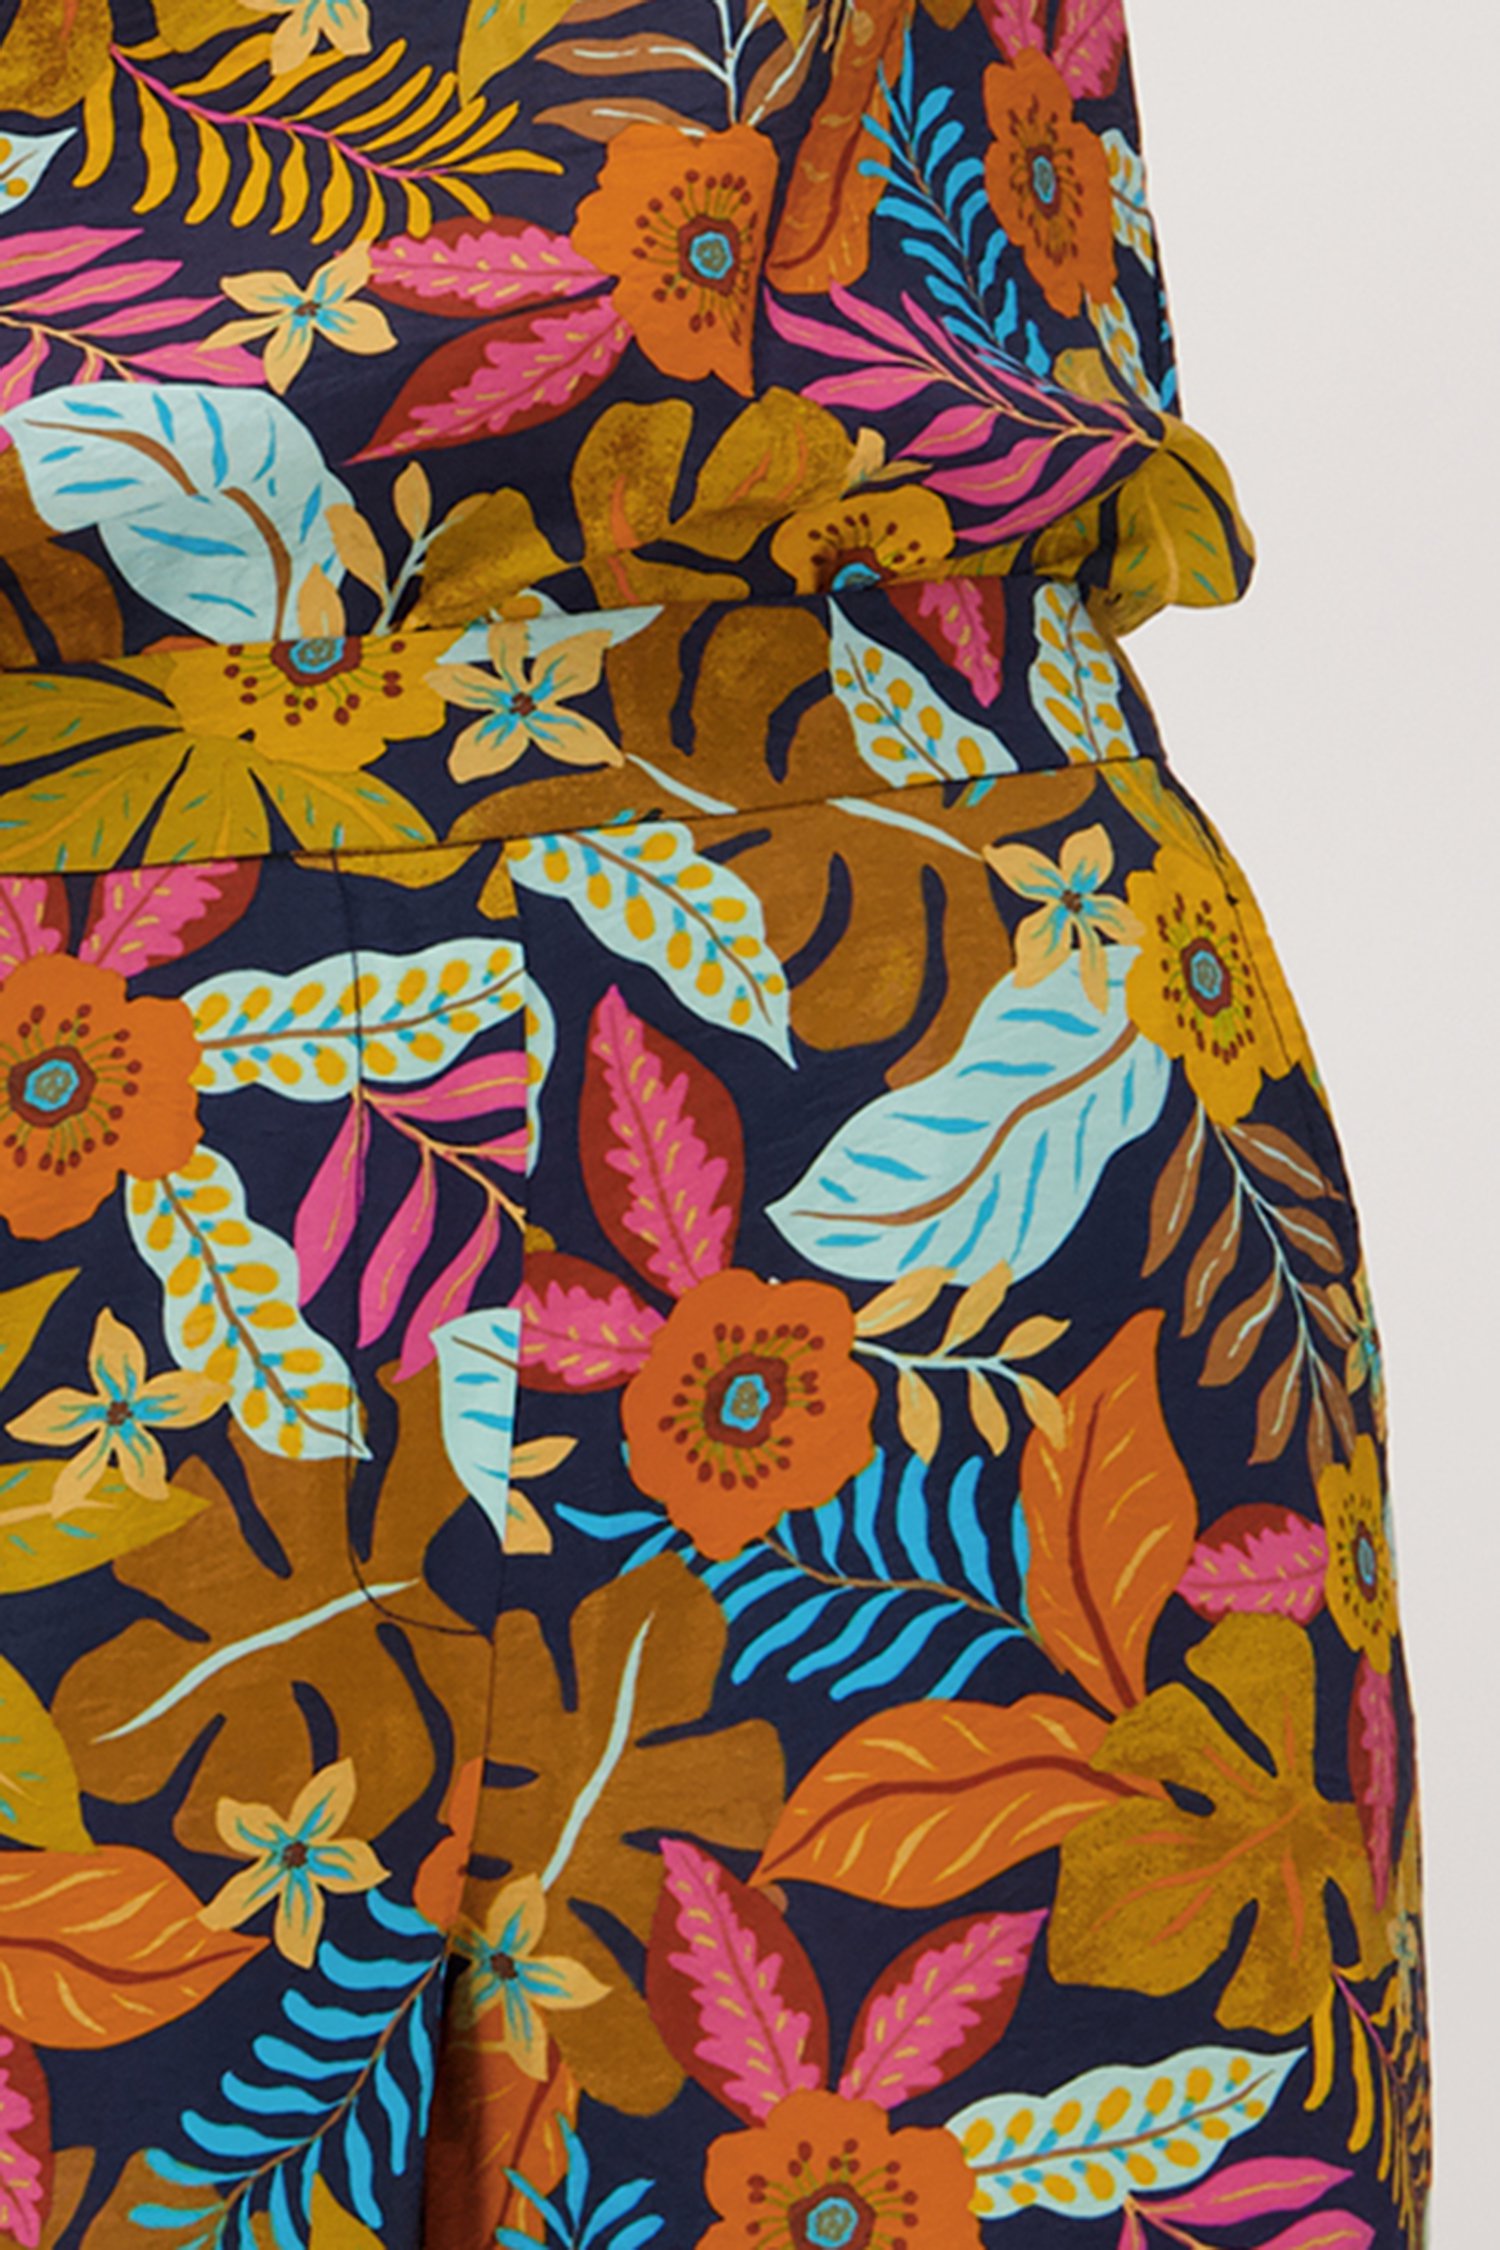 Wijde navy broek met kleurrijke bloemenprint van Libelle voor Dames